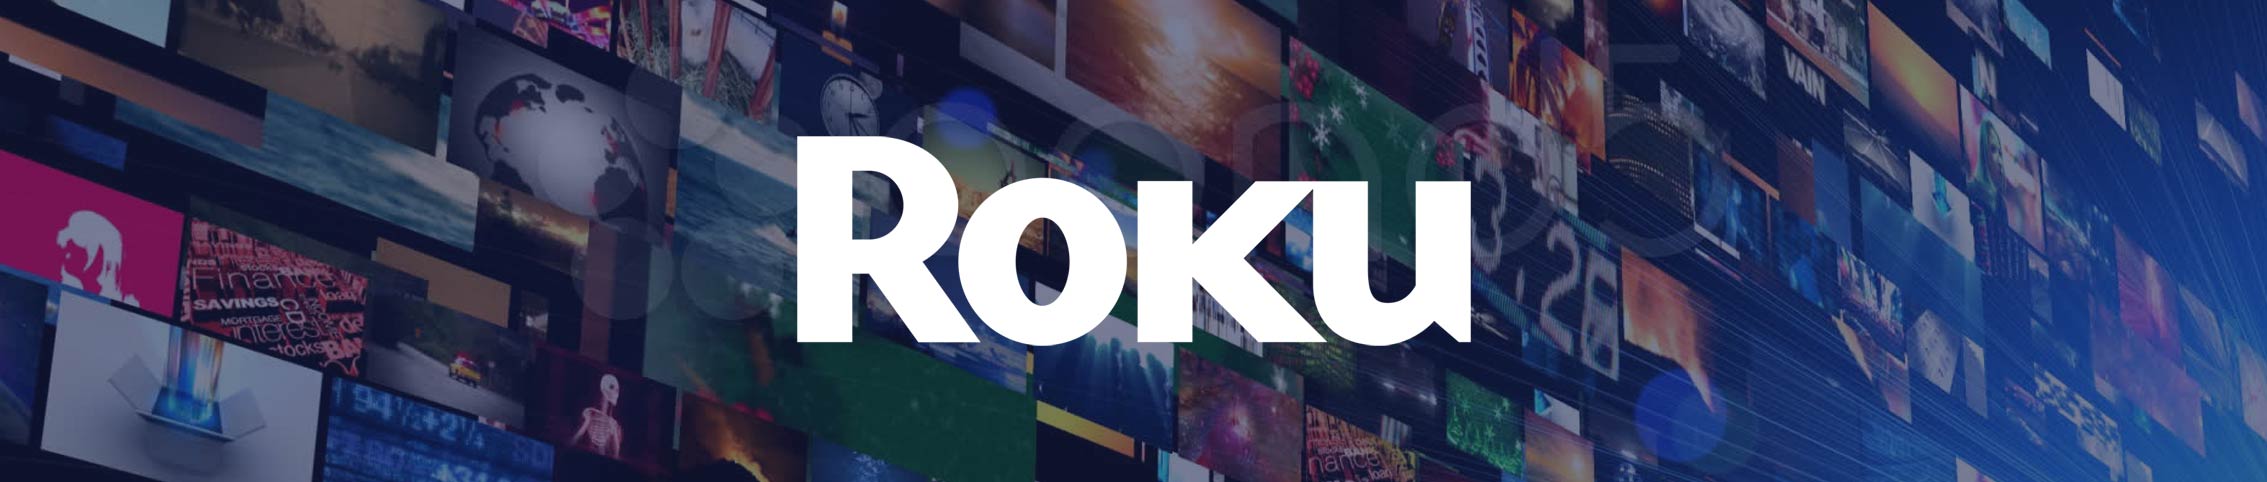 Roku-Streaming, Chromecast vs Roku 2019.